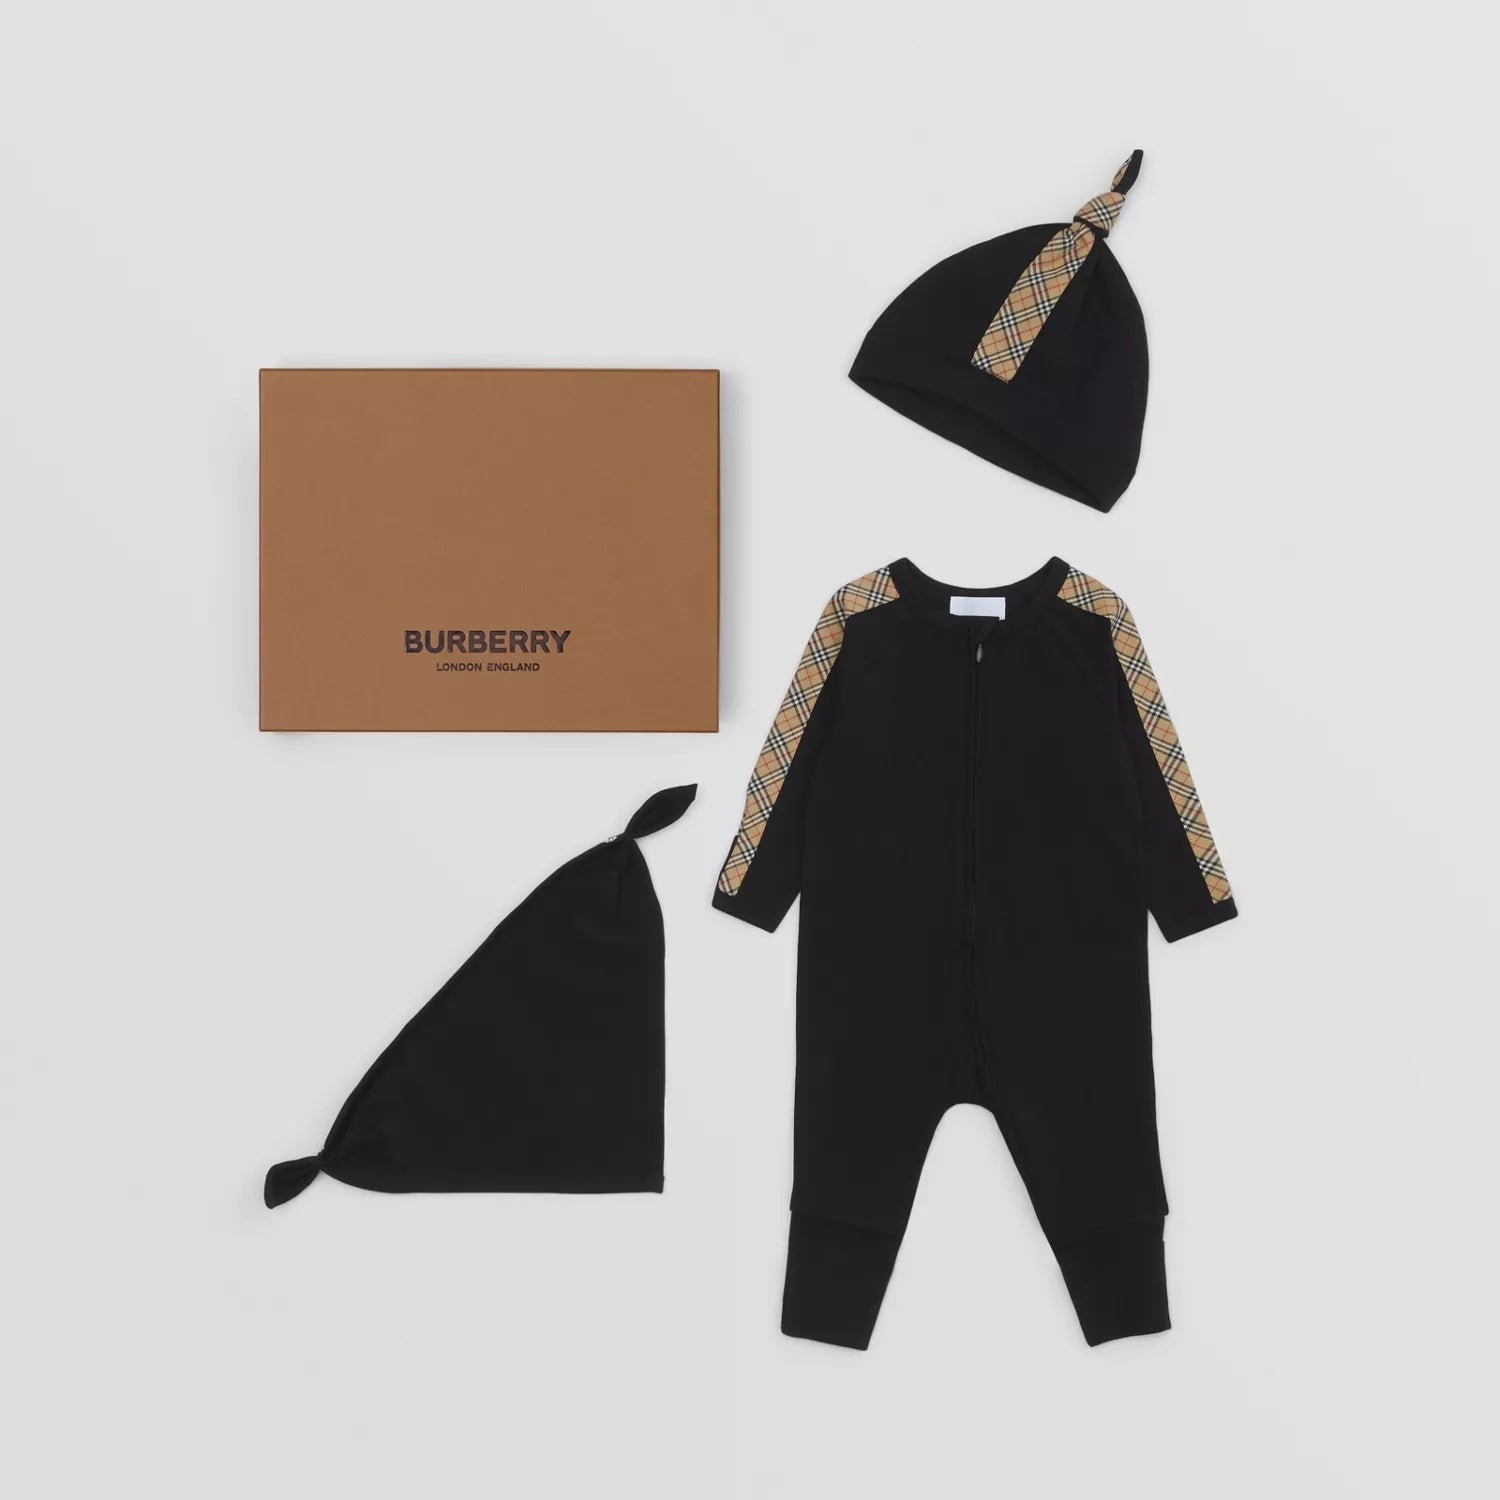 Baby Boys & Girls Black Babysuit Set